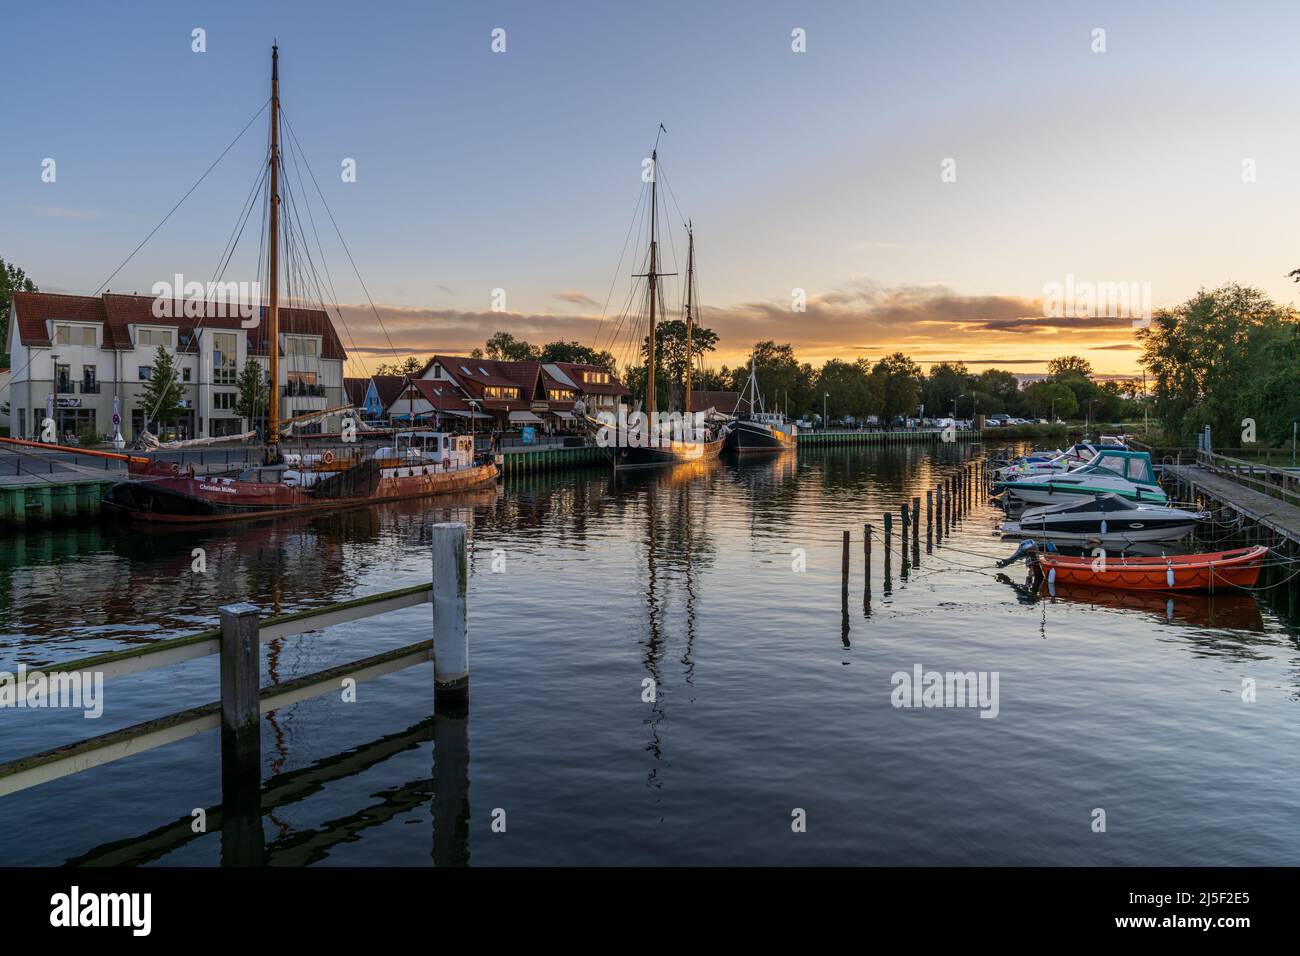 Greifswald, Mecklenburg-Vorpommern, Deutschland - 04. Oktober 2020: Blick von der Wieckbrücke auf die Boote am Ufer des Ryck Stockfoto